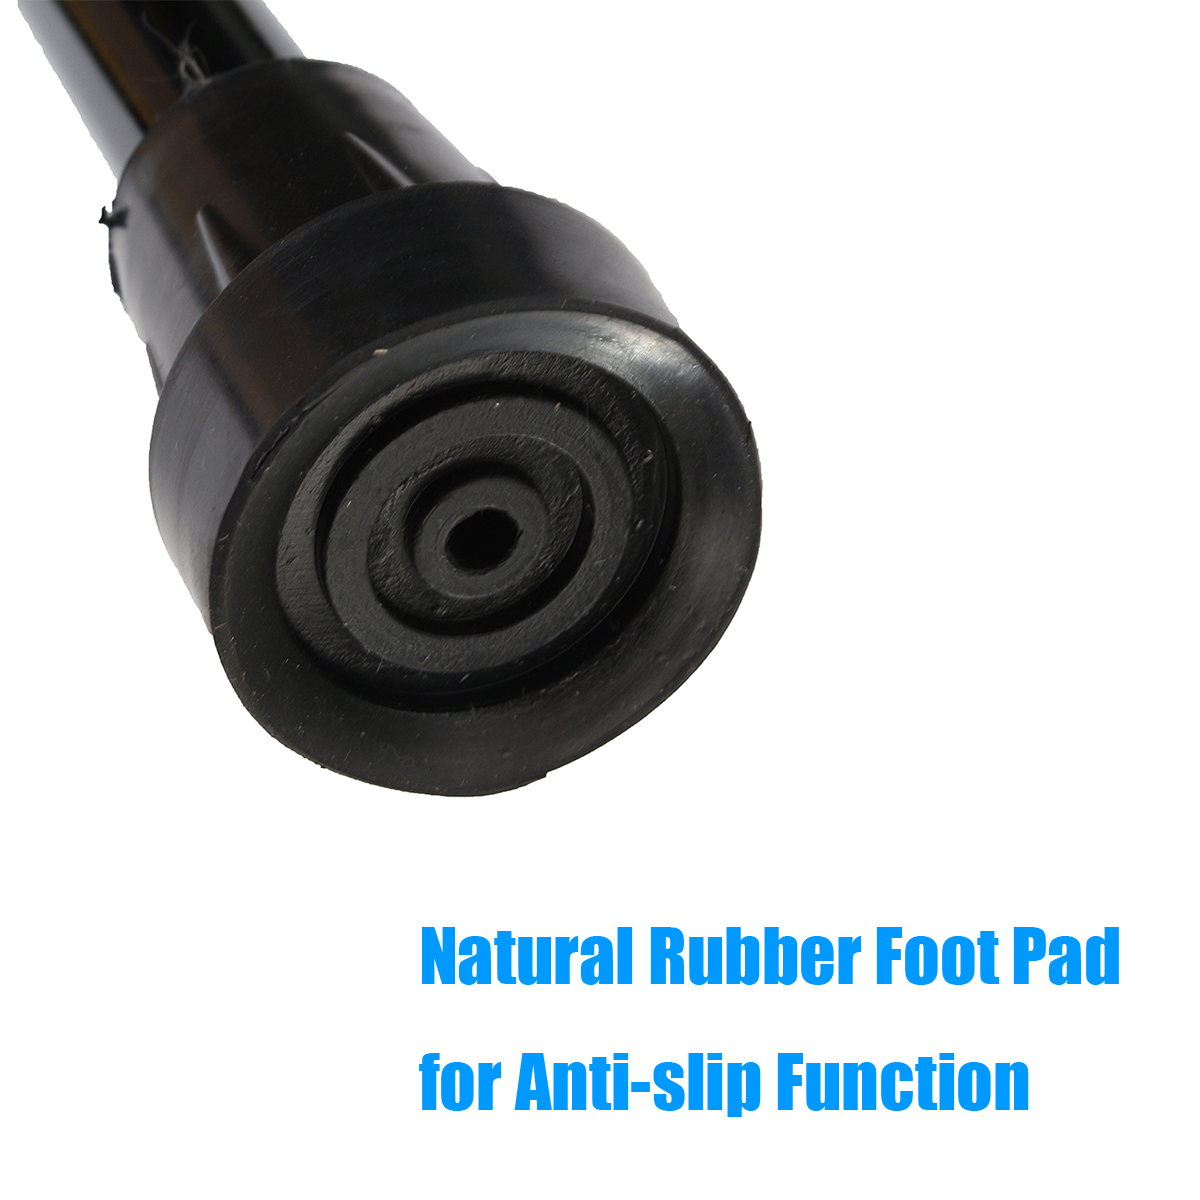 A-Pair-of-Adjustable-Aluminum-Alloy-Armpit-Crutches-Forearm-Crutches-Elbow-Crutches-Climbing-Sticks-1645522-5